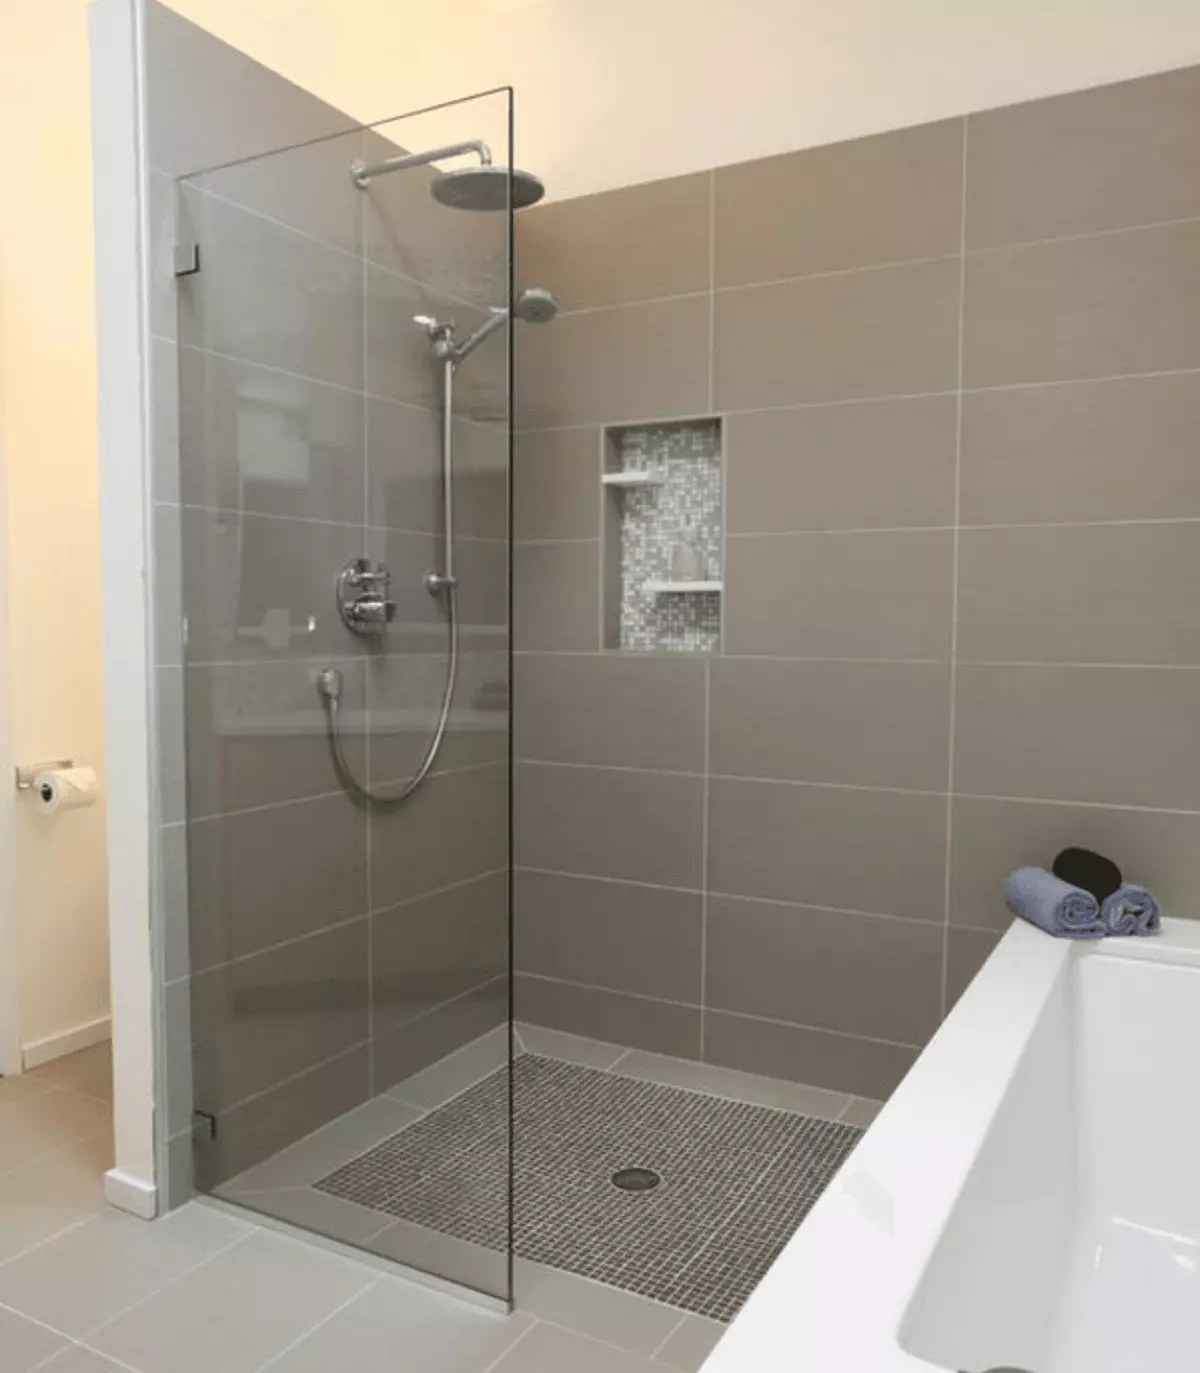 Tuš bez tuširanja u kupaonici (57 fotografija): Dizajn i uređenje kupaonice s scenom duše bez kabine u privatnoj kući i apartmanu 21400_3